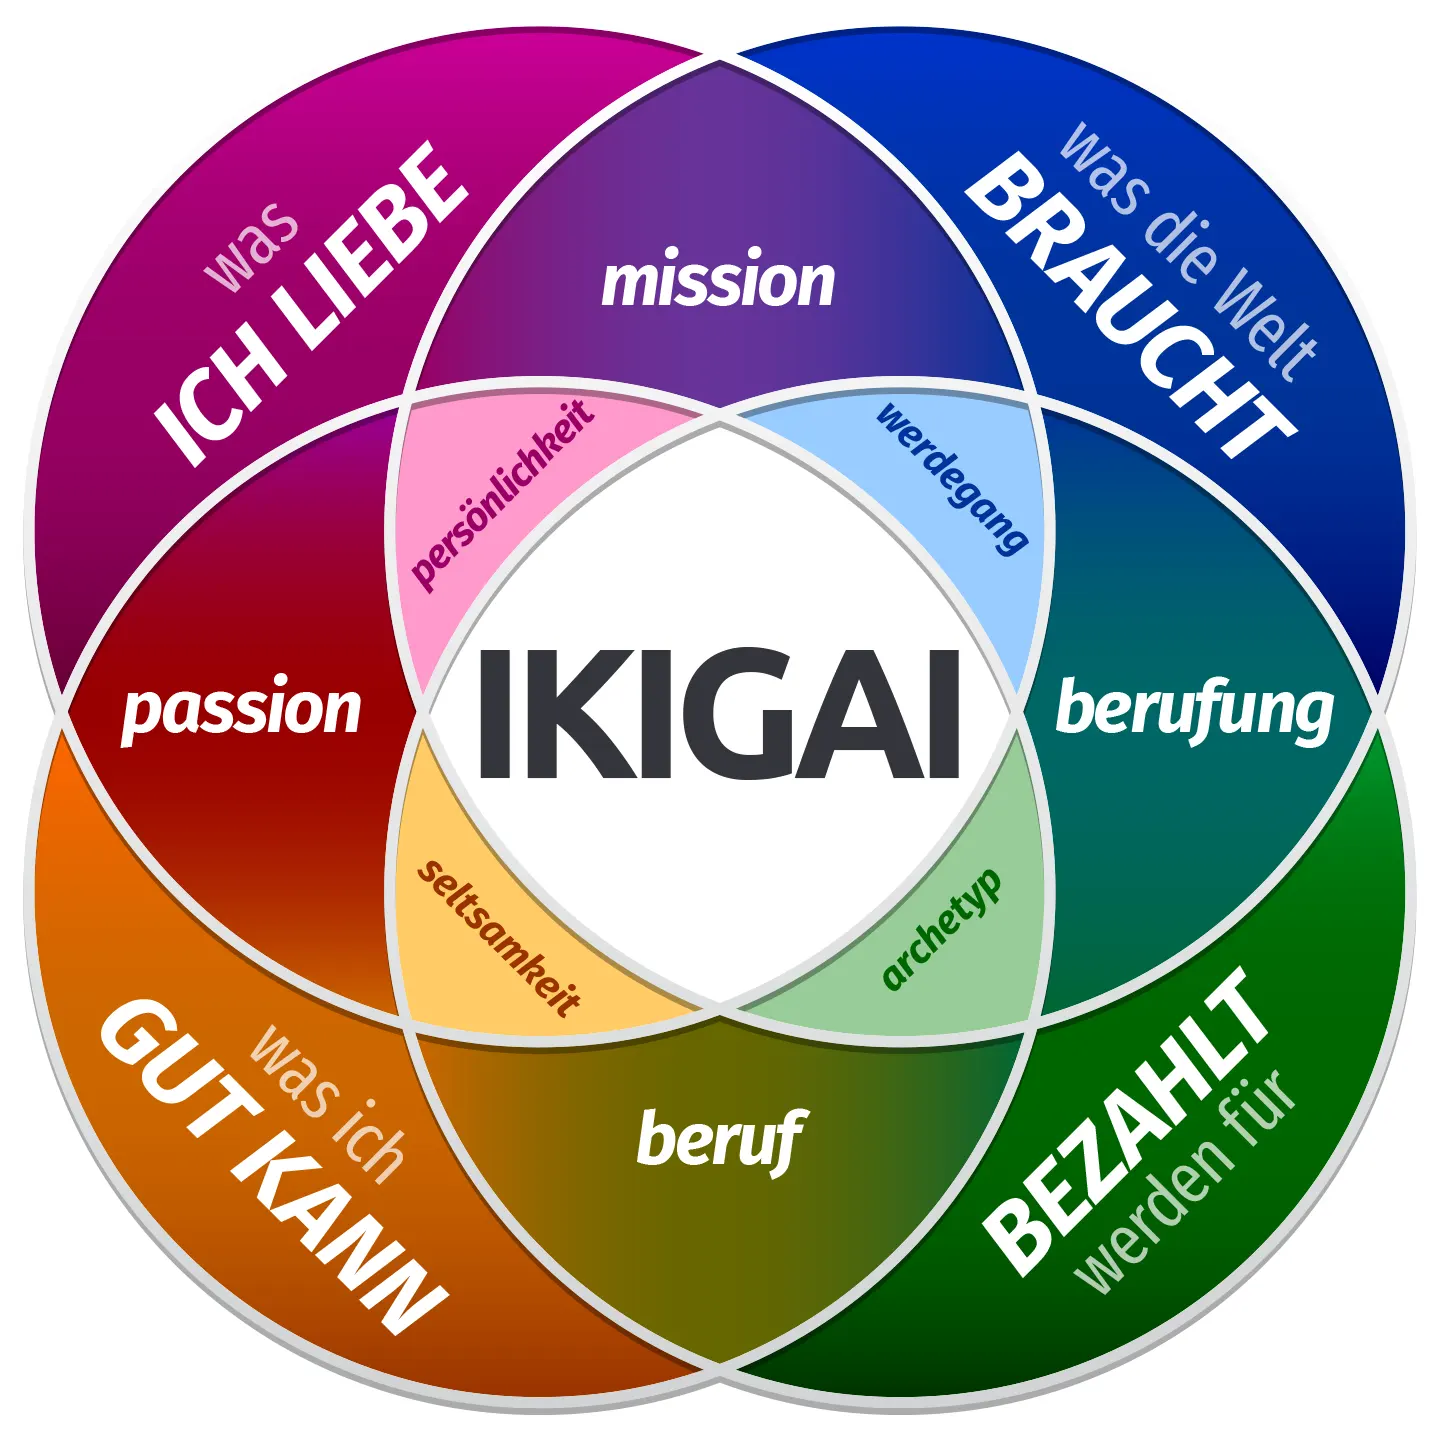 ikigai bedeutung auf deutsch